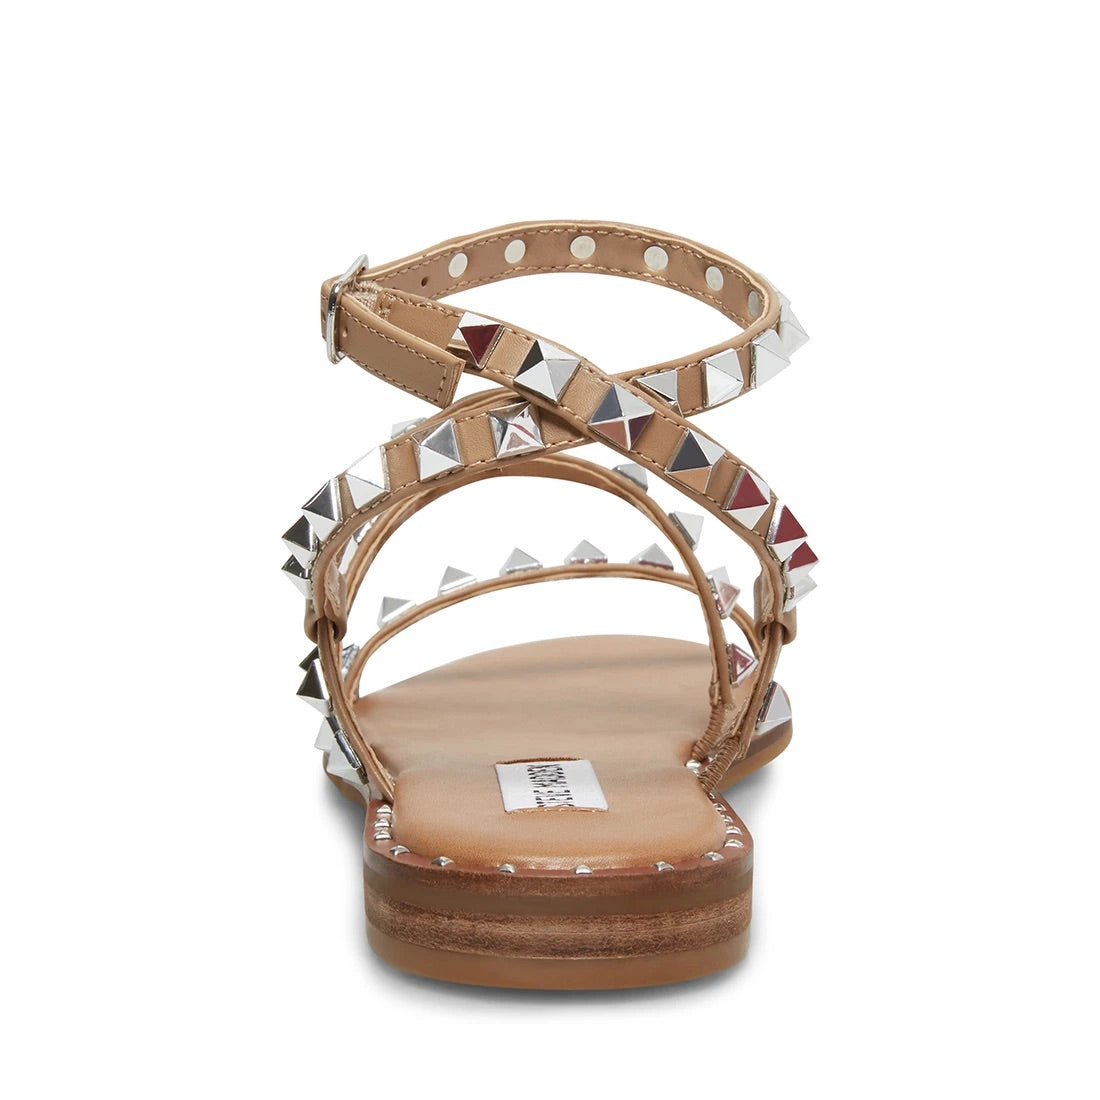 Steve Madden Travel Stud Sandal in Tan • Impressions Online Boutique